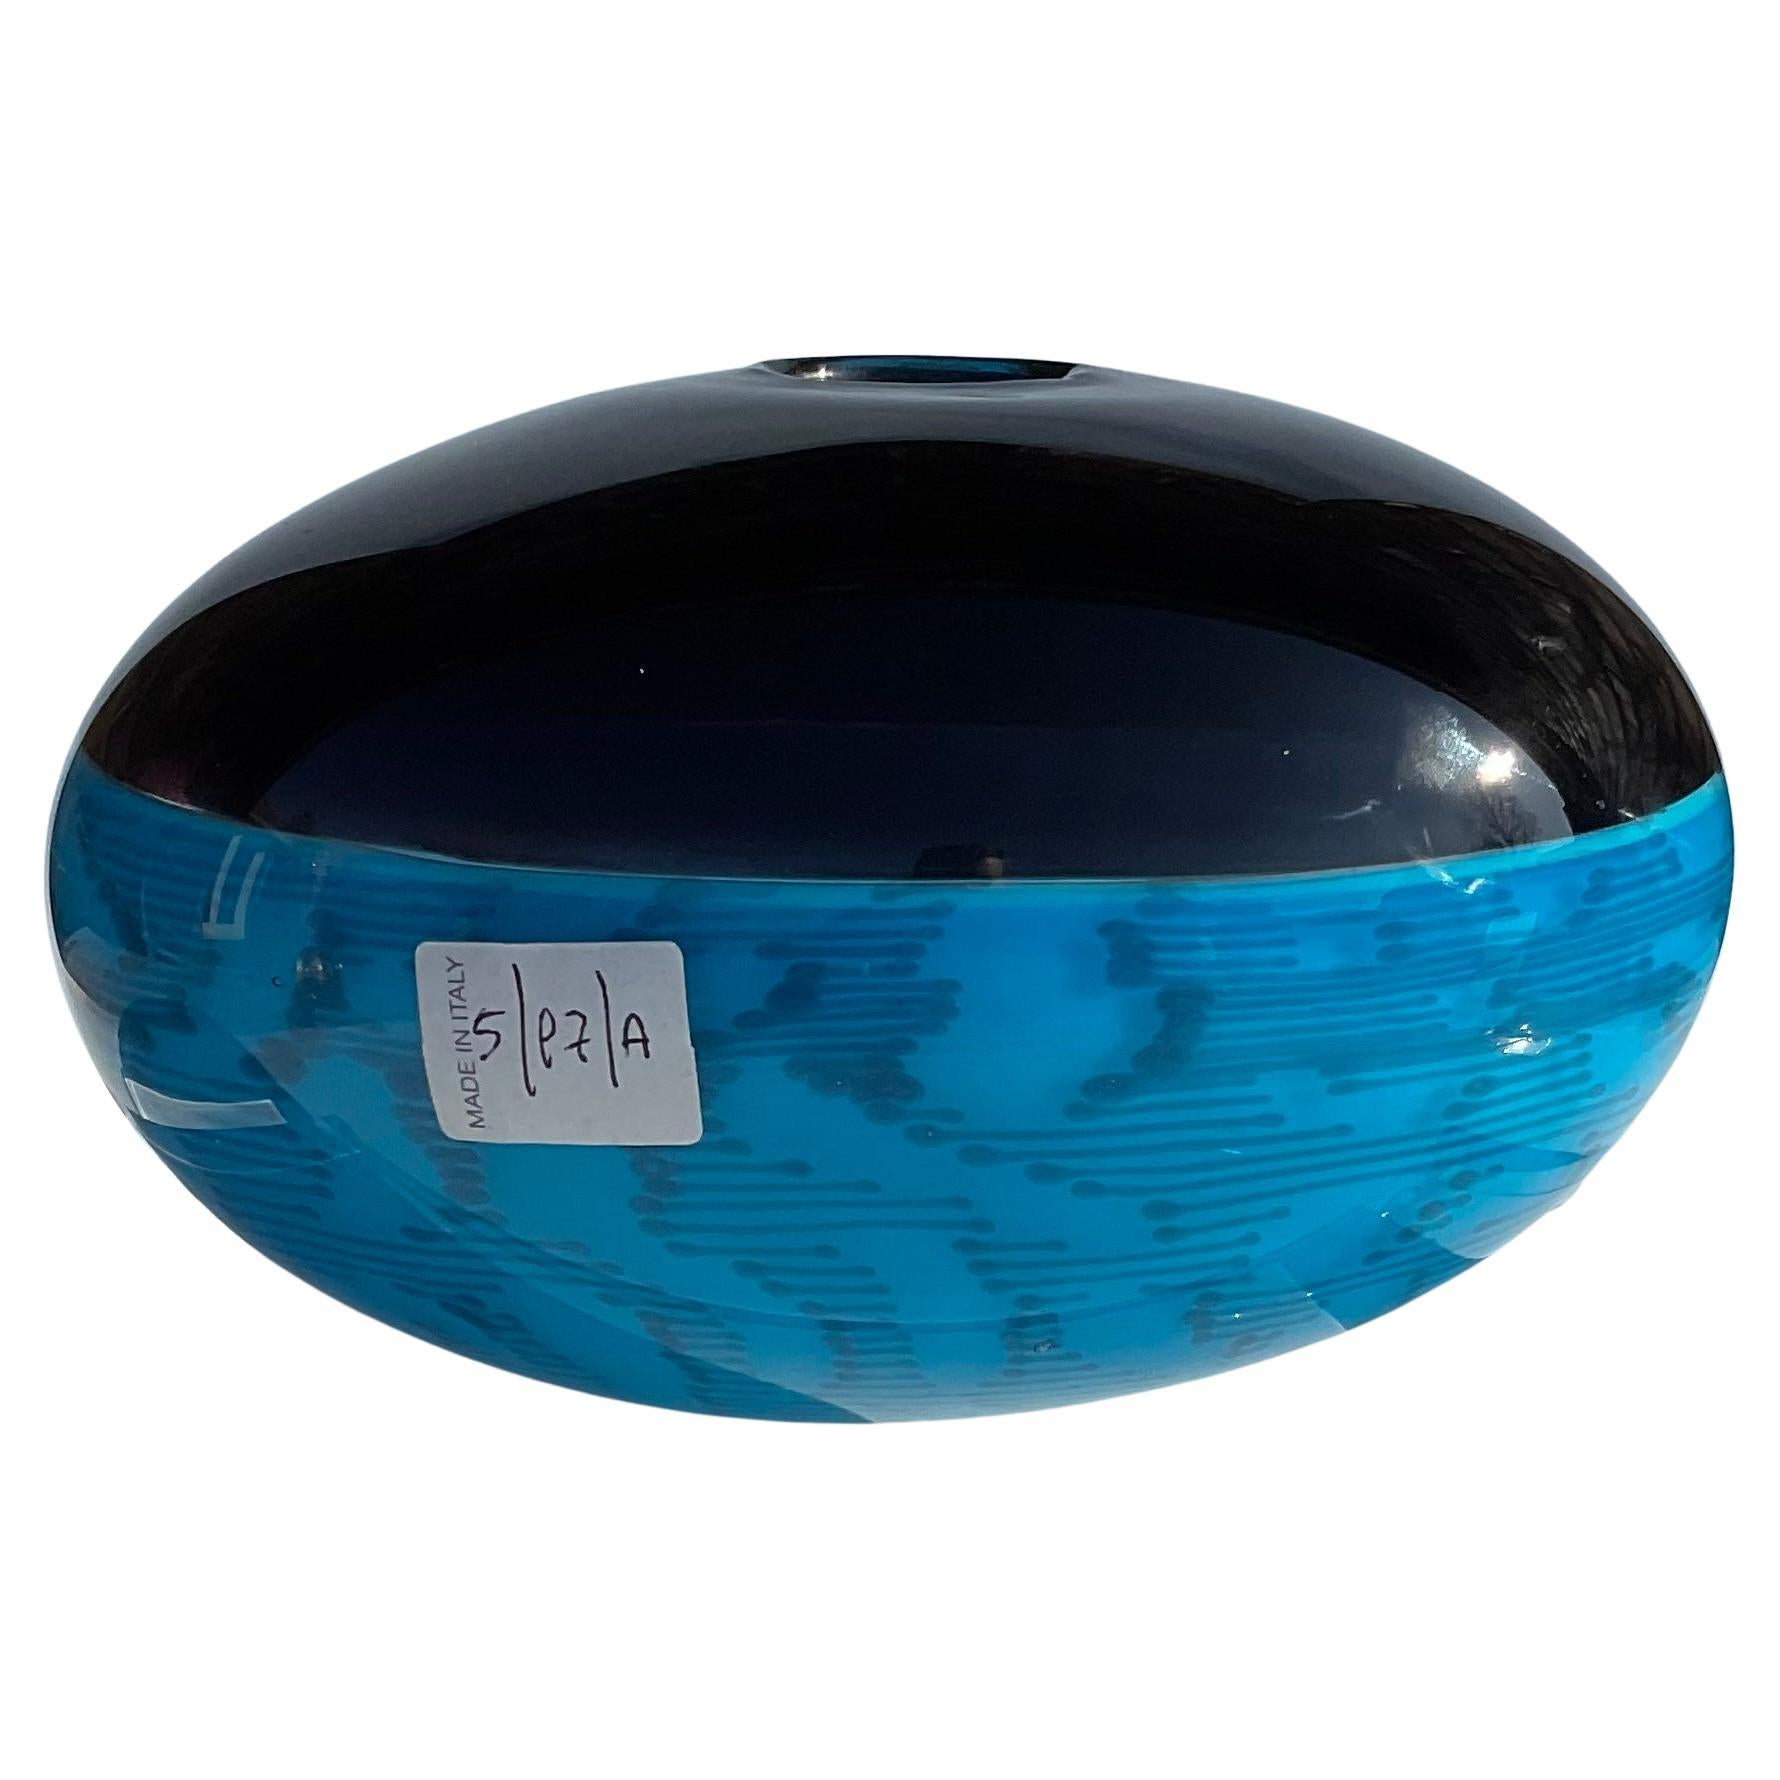 Antonio da Ros Cenedese Fossili Incalmo Murano Glass Vase Blue Cane Segments For Sale